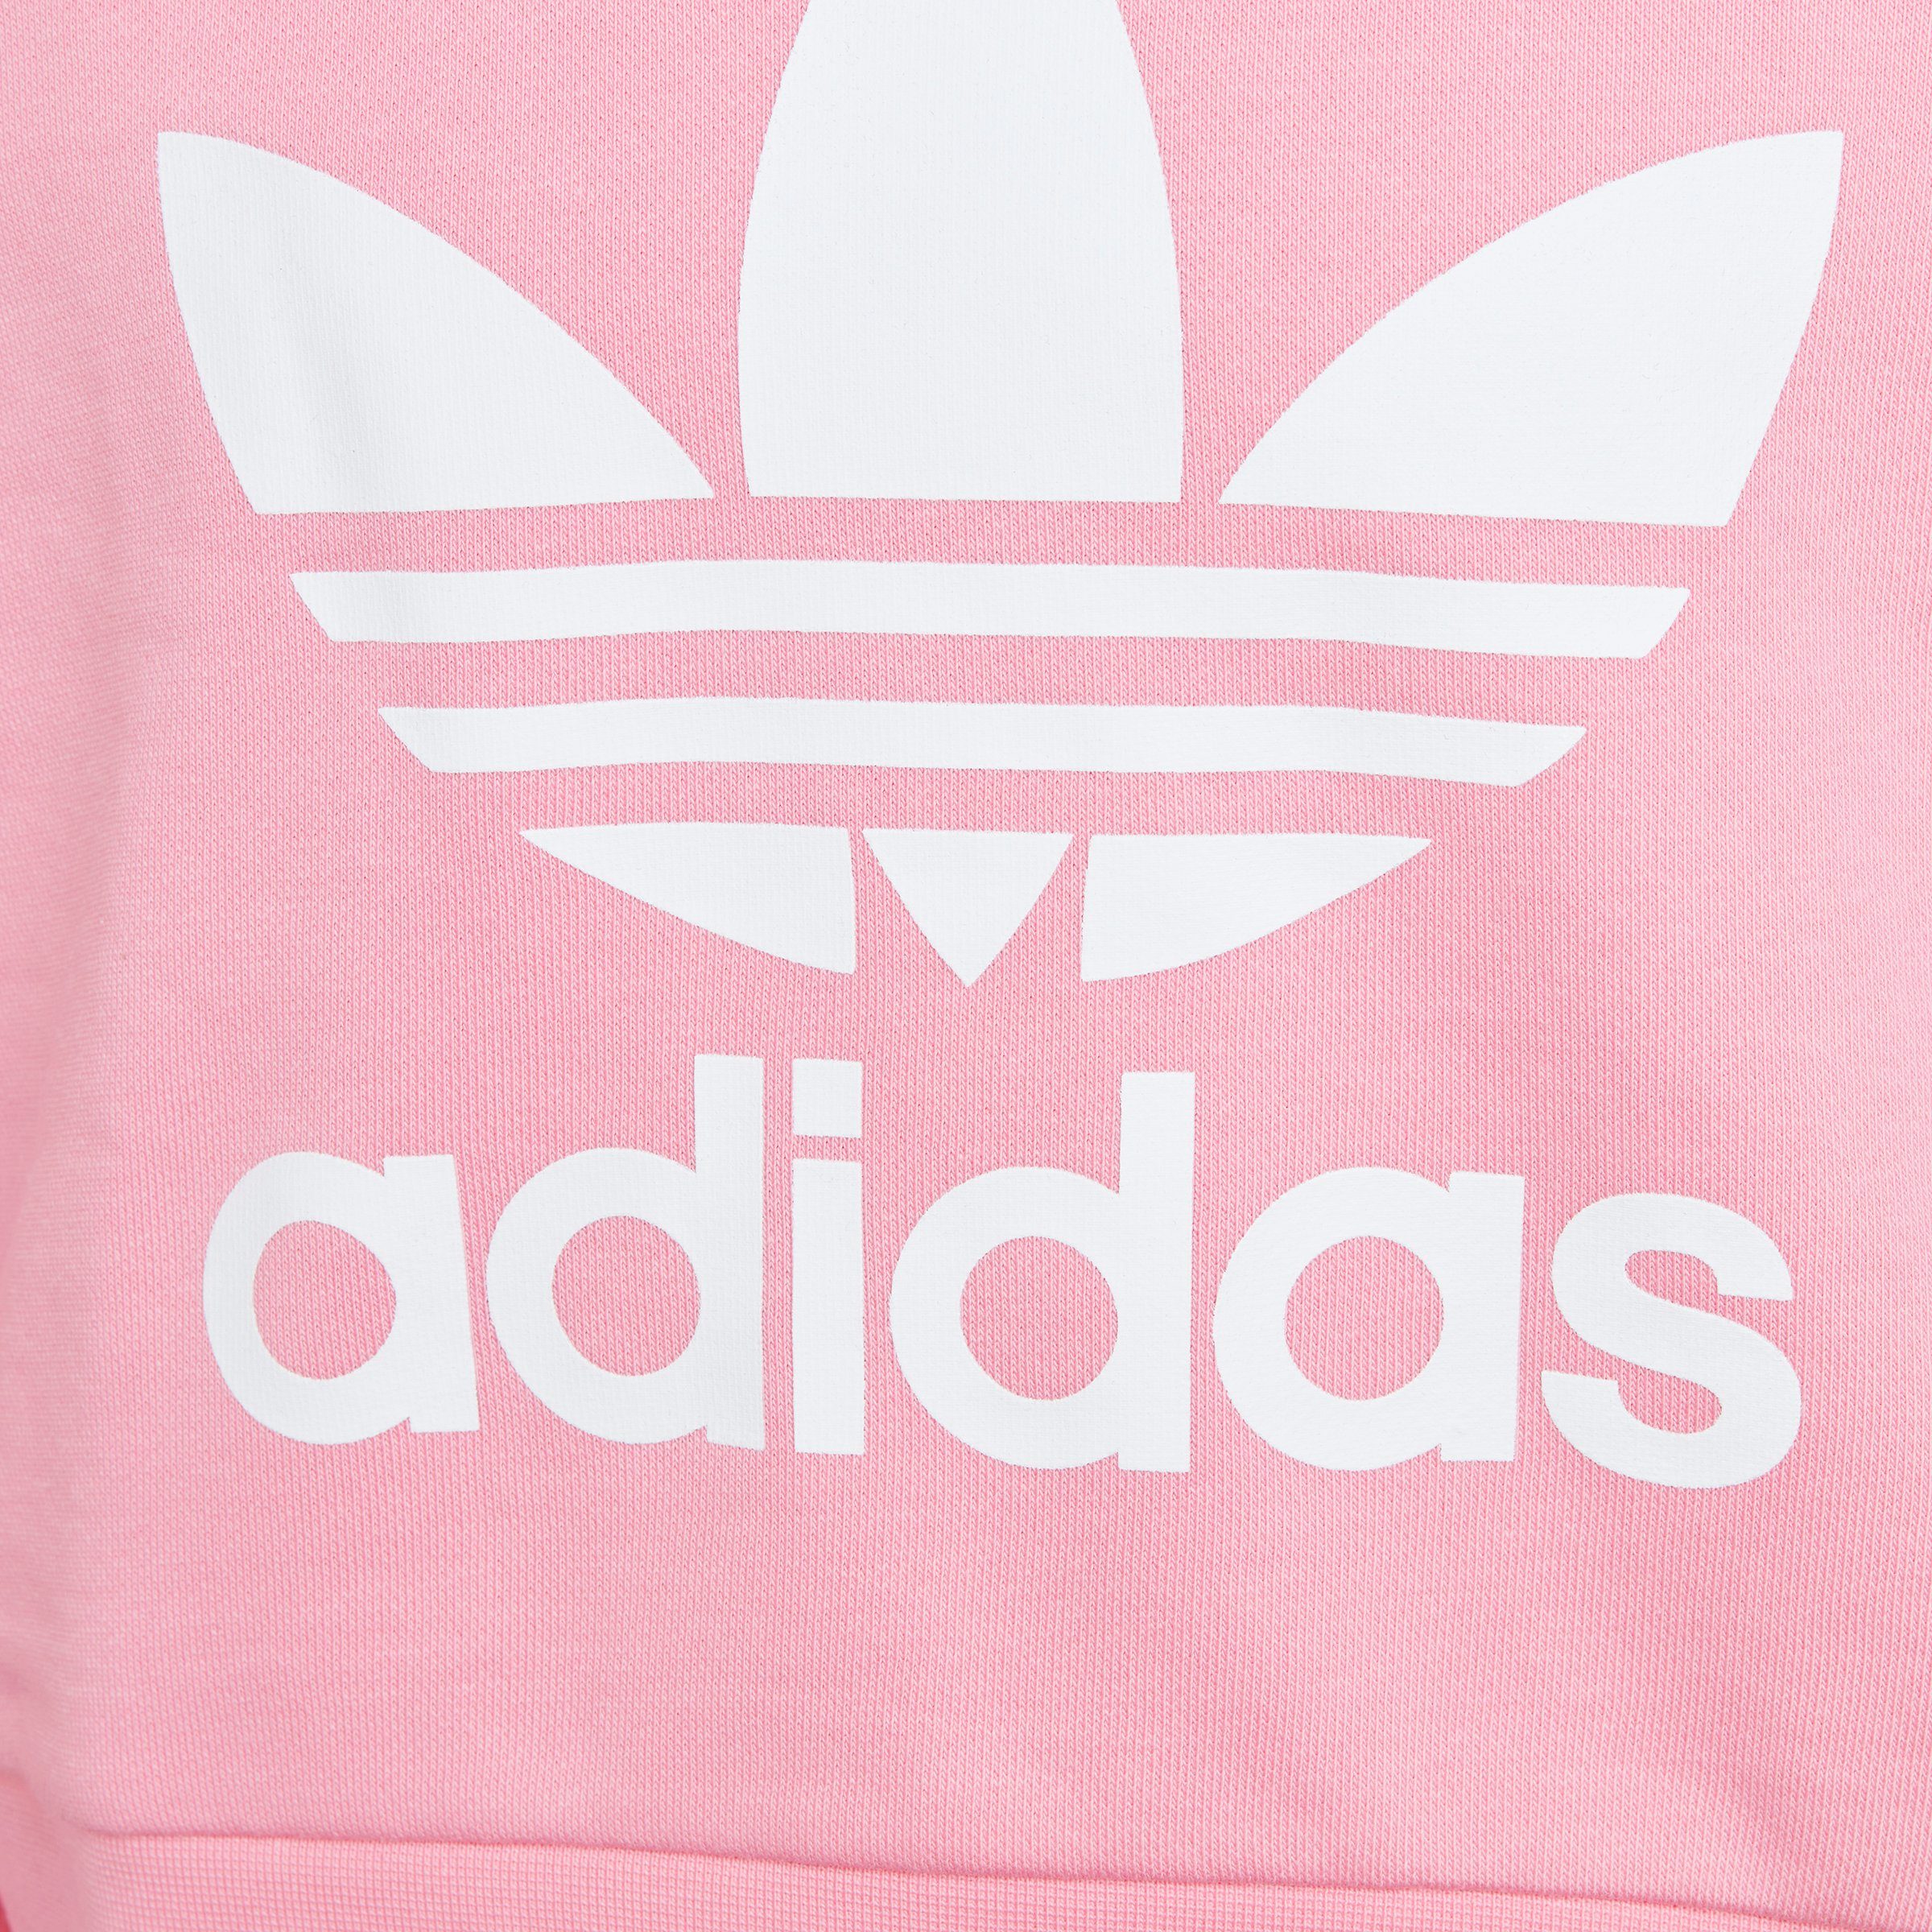 Originals Bliss HOODIE CROPPED Pink ADICOLOR Sweatshirt adidas